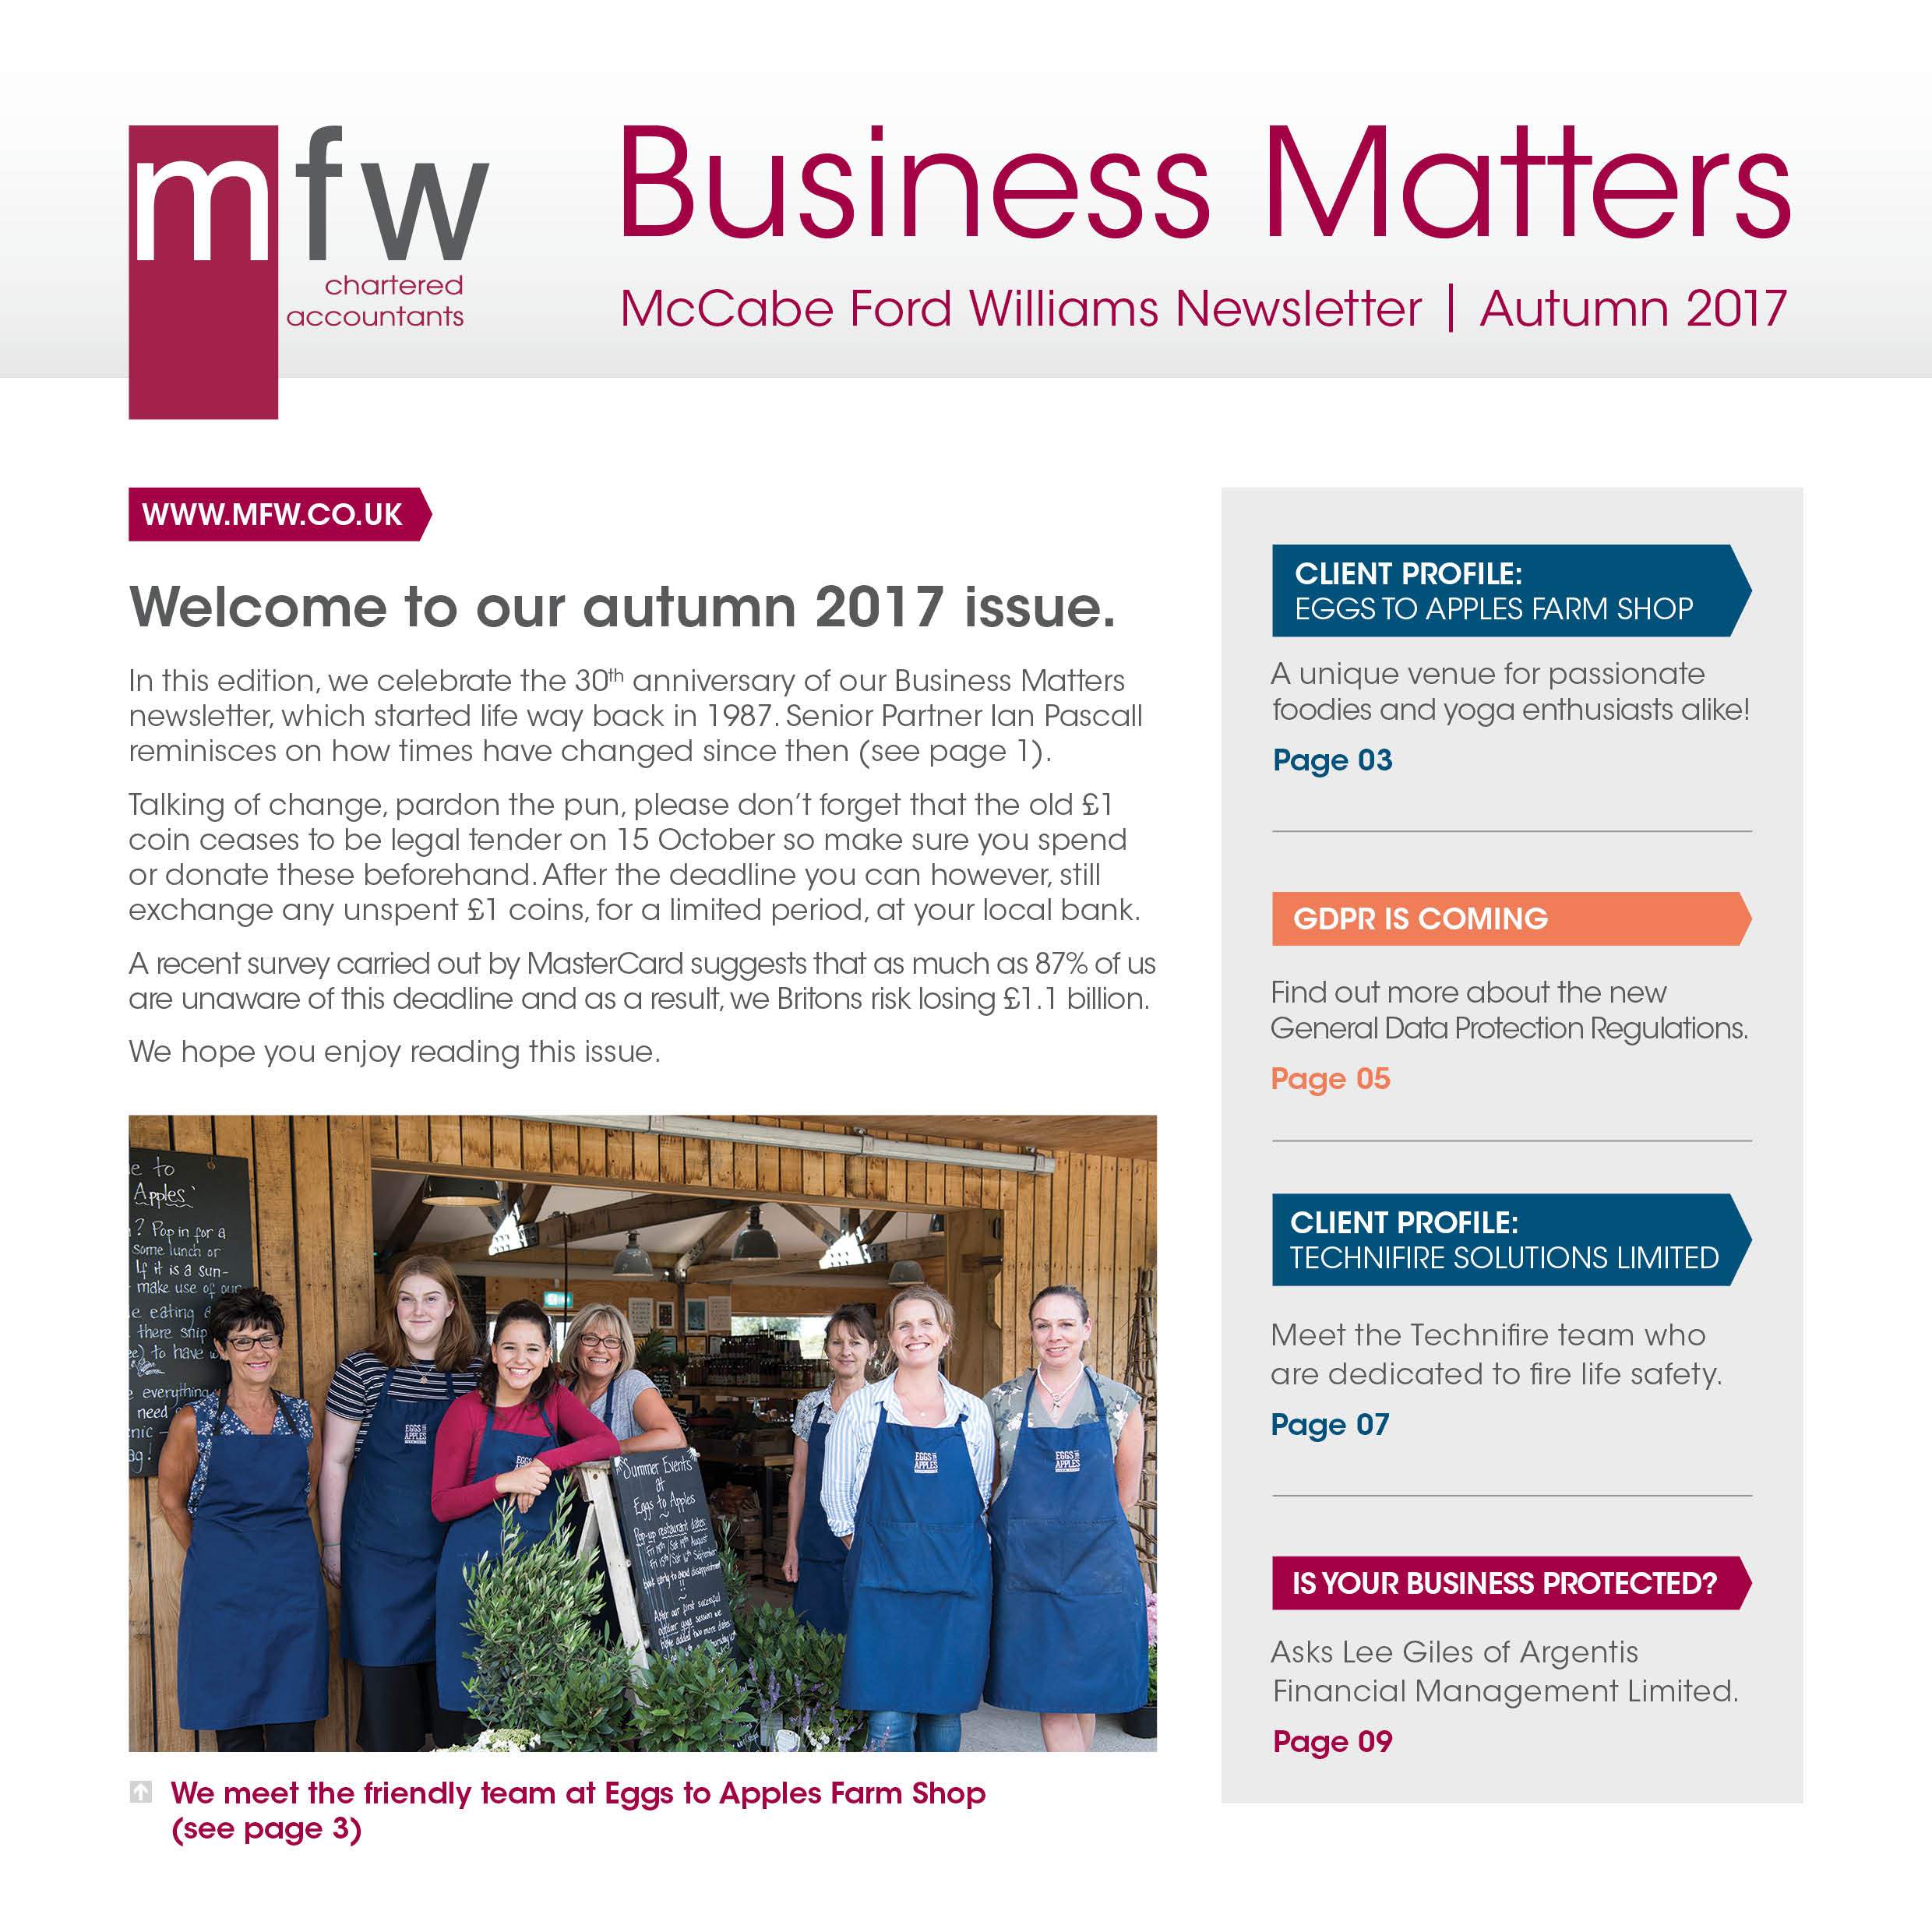 Business Matters Autumn 2017 newsletter